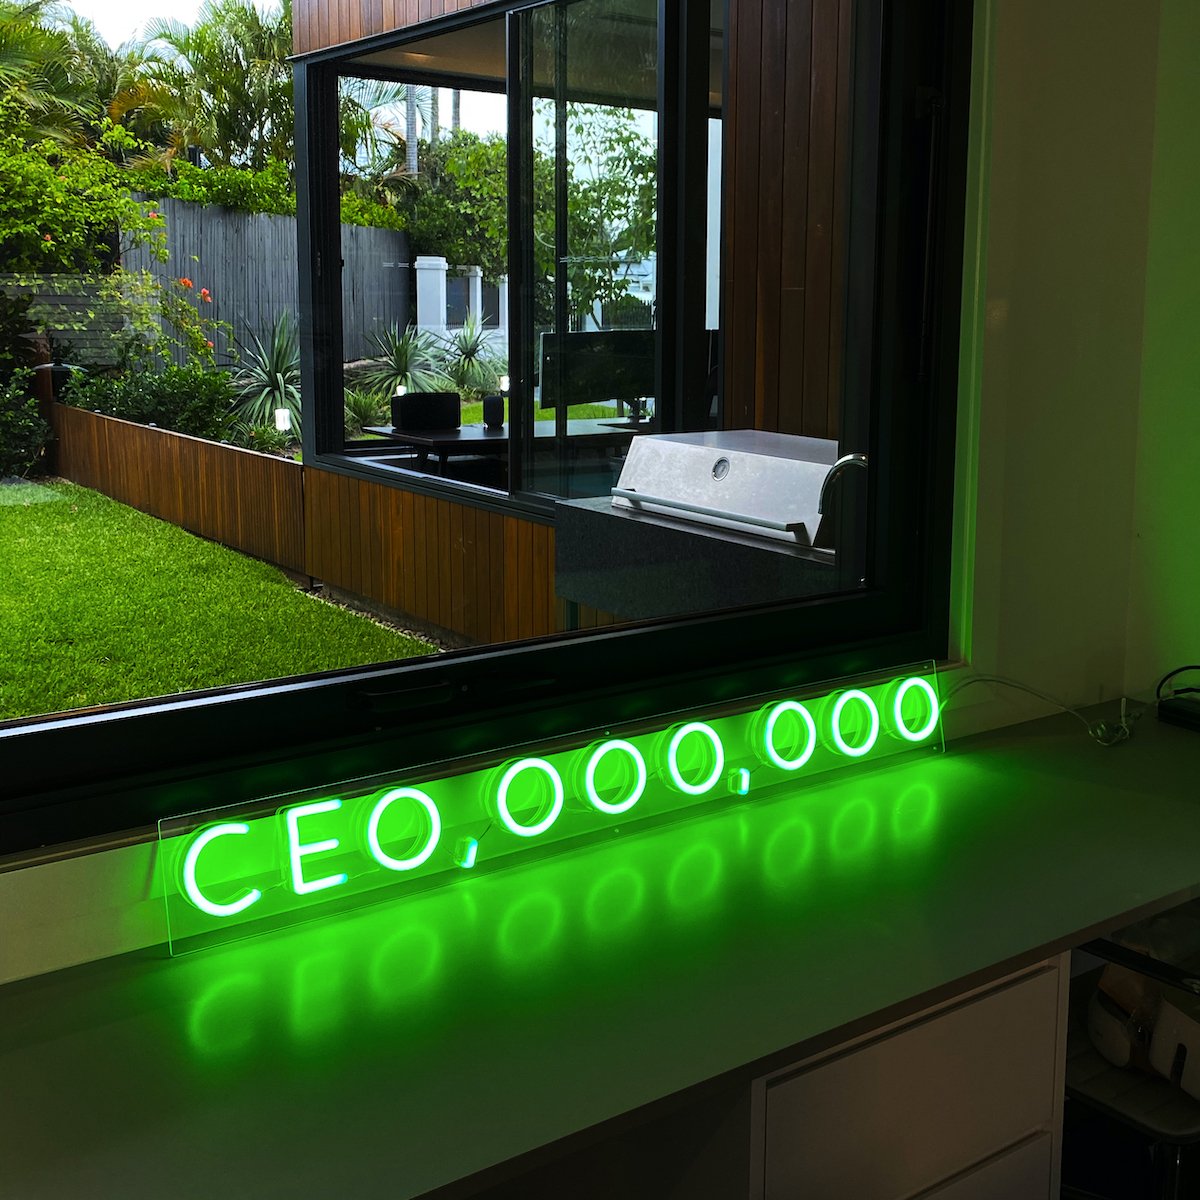 "CEO, OOO, OOO" Neon Sign